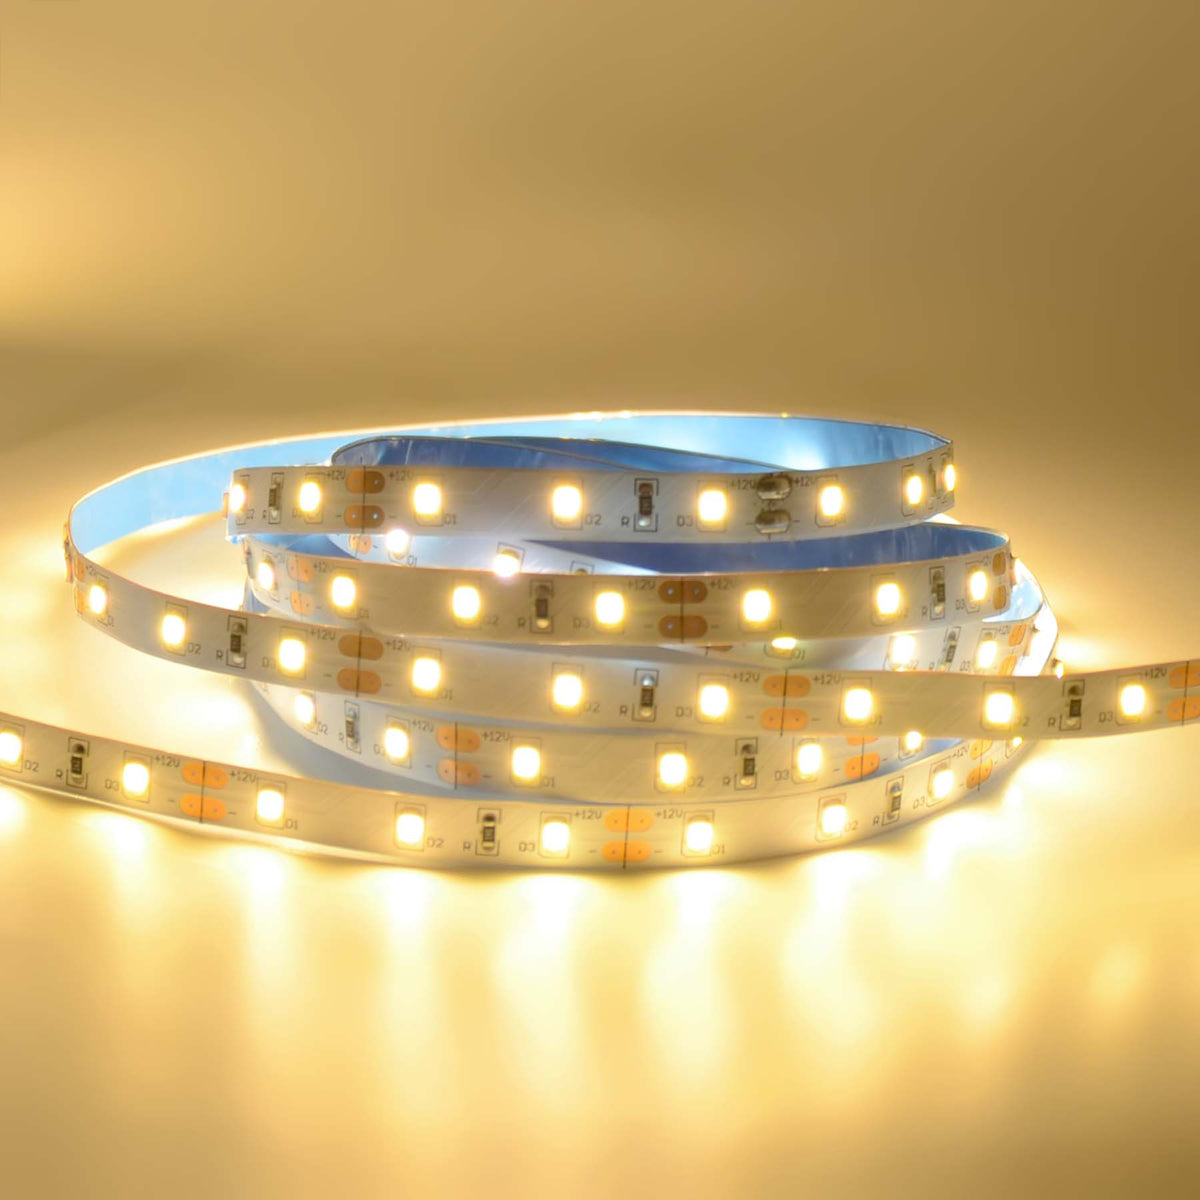 G.W.S. LED LED Strip Lights Strip Only / 5M / Warm White (3000K) LED 2835 Strip Light, 5M Reel, IP20, 12V, 60 LEDs/M